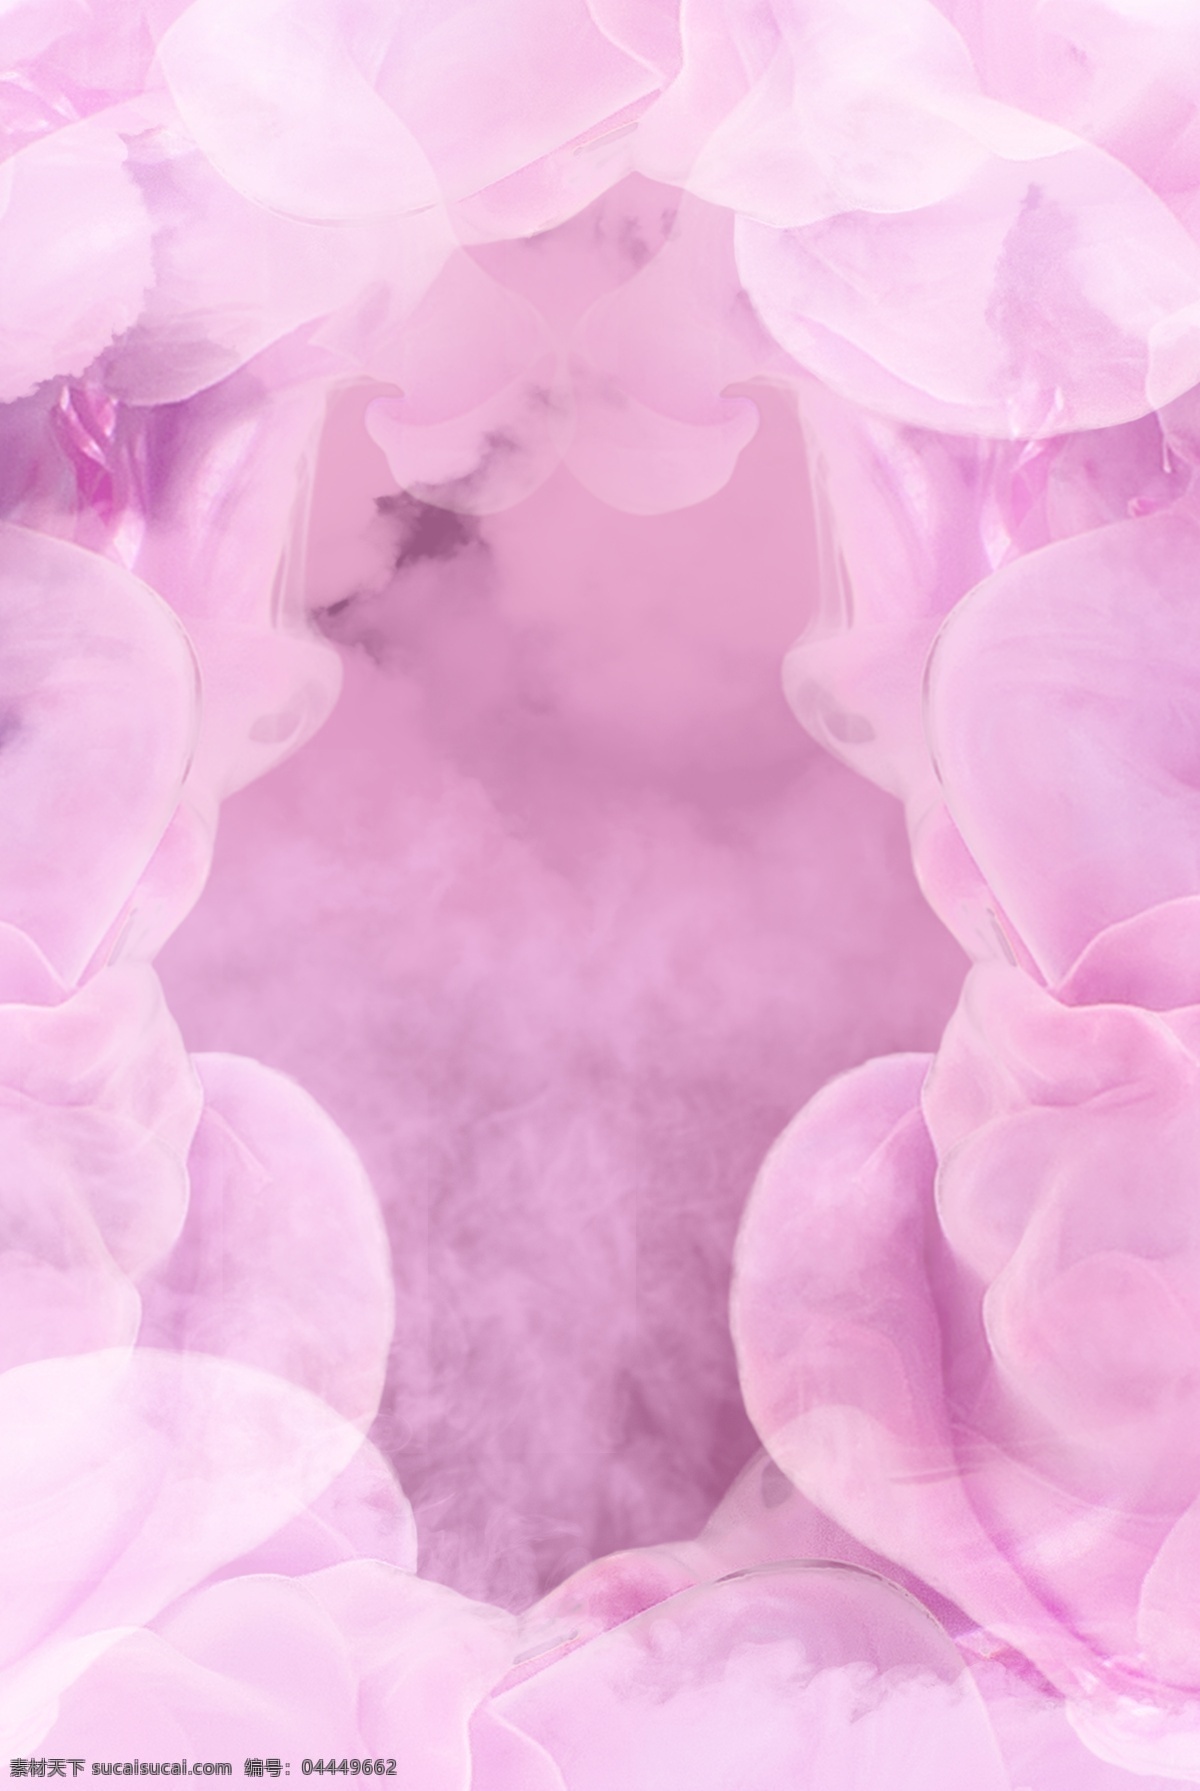 烟雾 渲染 紫色 唯美 背景 海报 烟雾渲染 背景海报 粉色渐变 小清新 烟雾效果